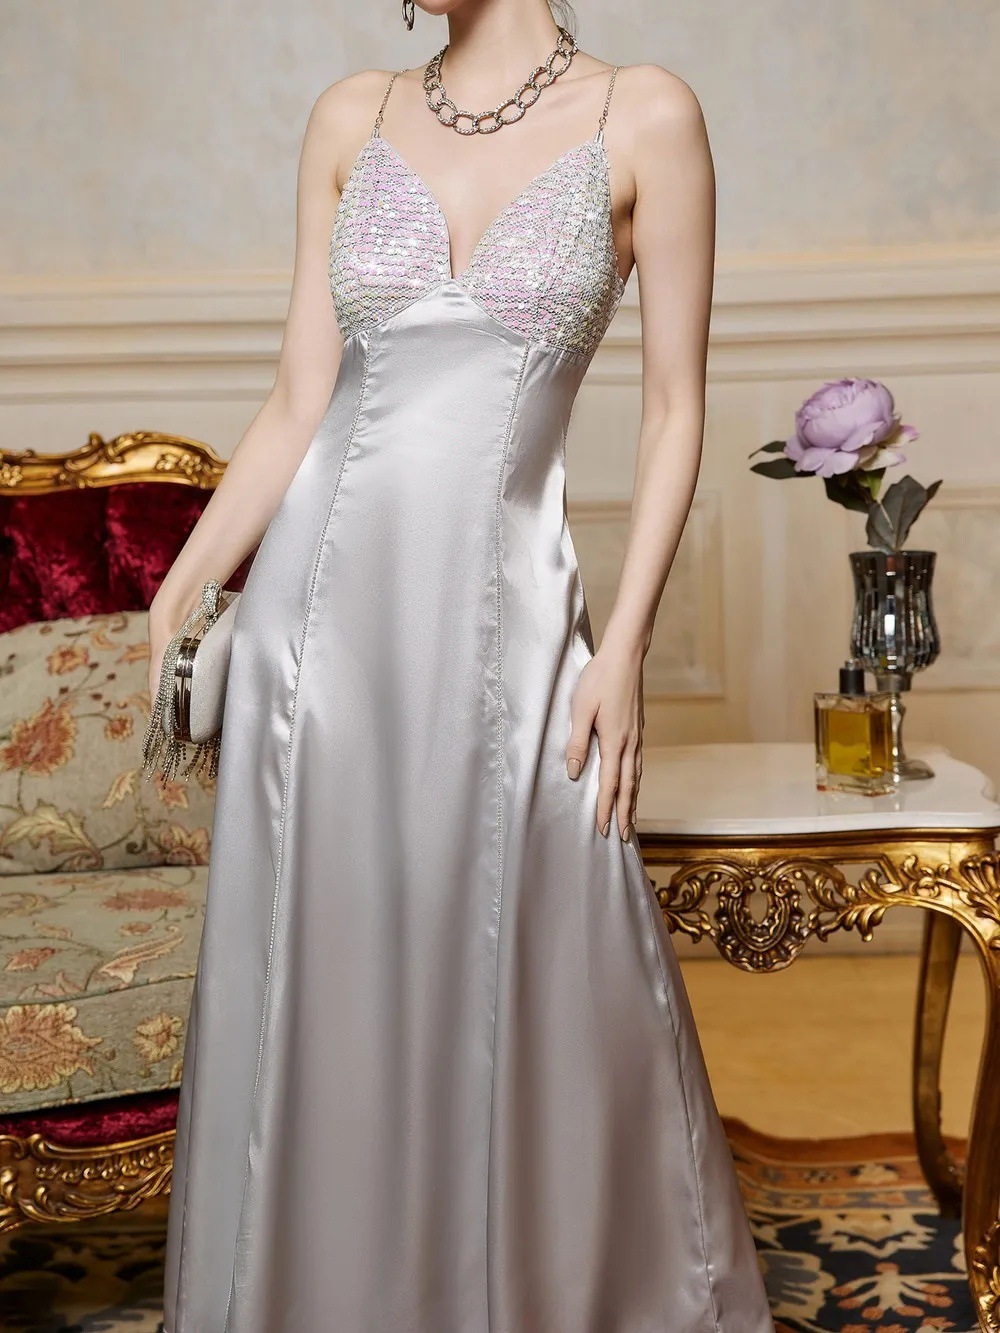 European style formal dress sling dress for women